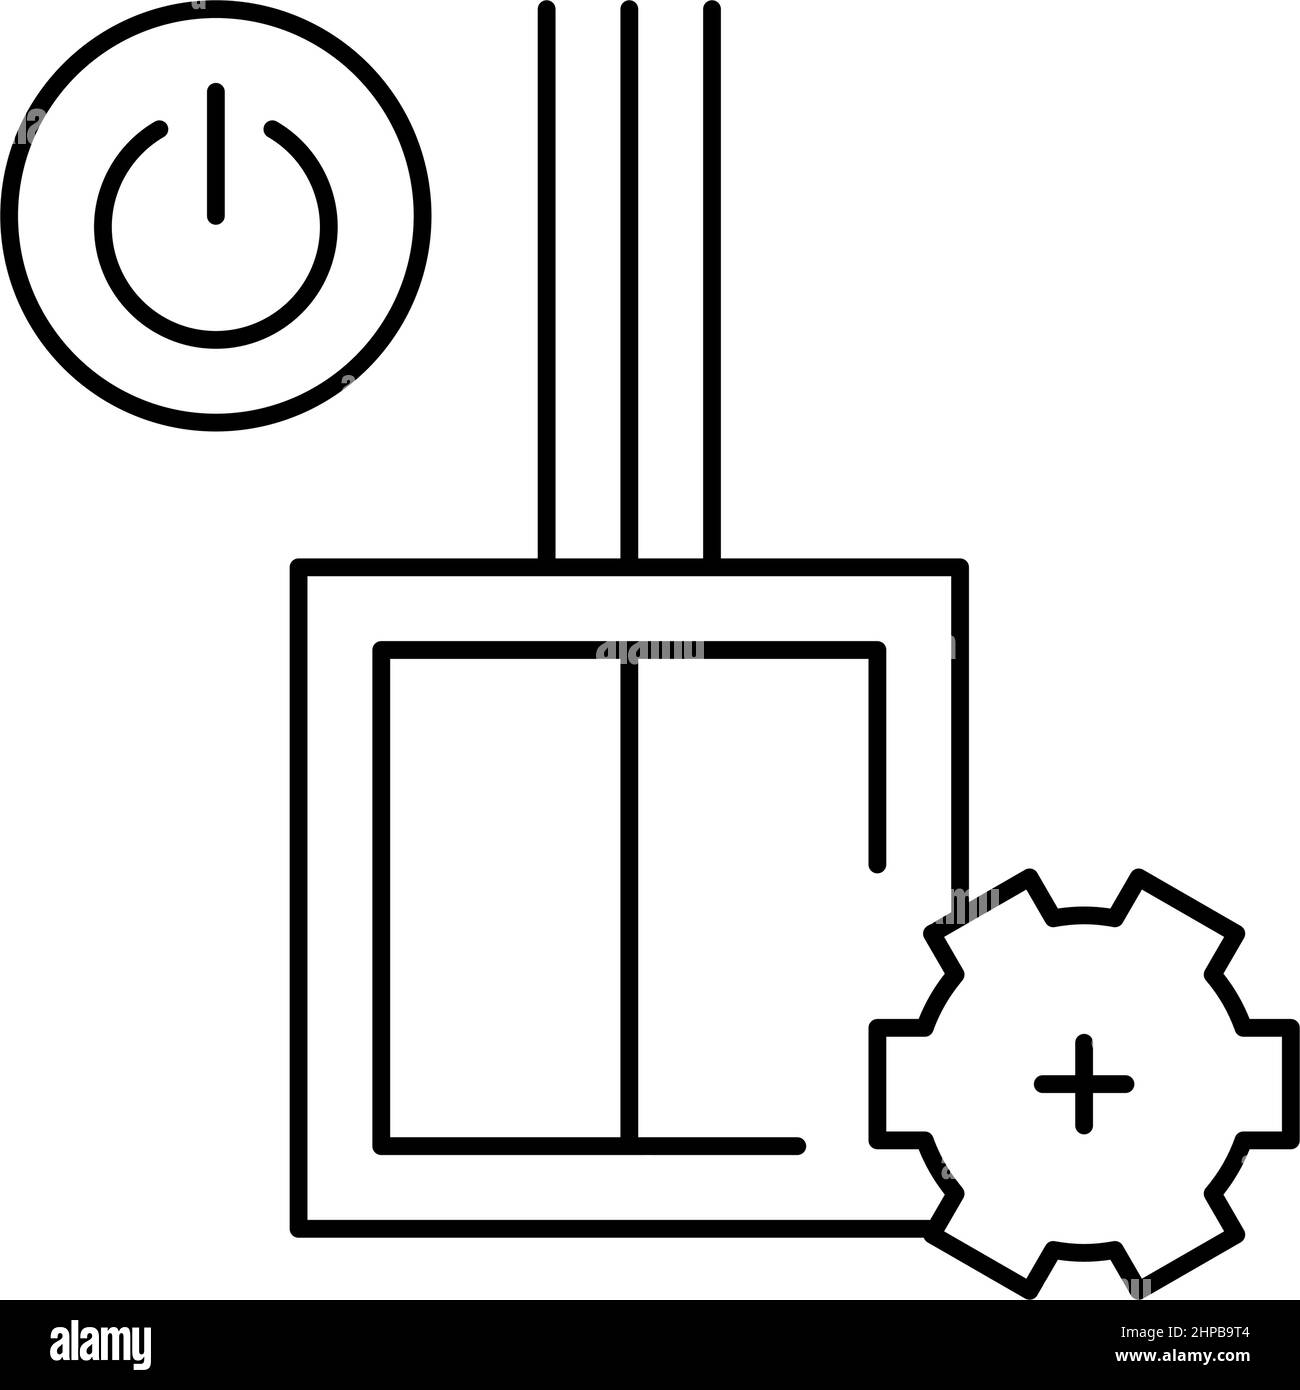 illustrazione vettoriale dell'icona della linea di installazione dello switch Illustrazione Vettoriale